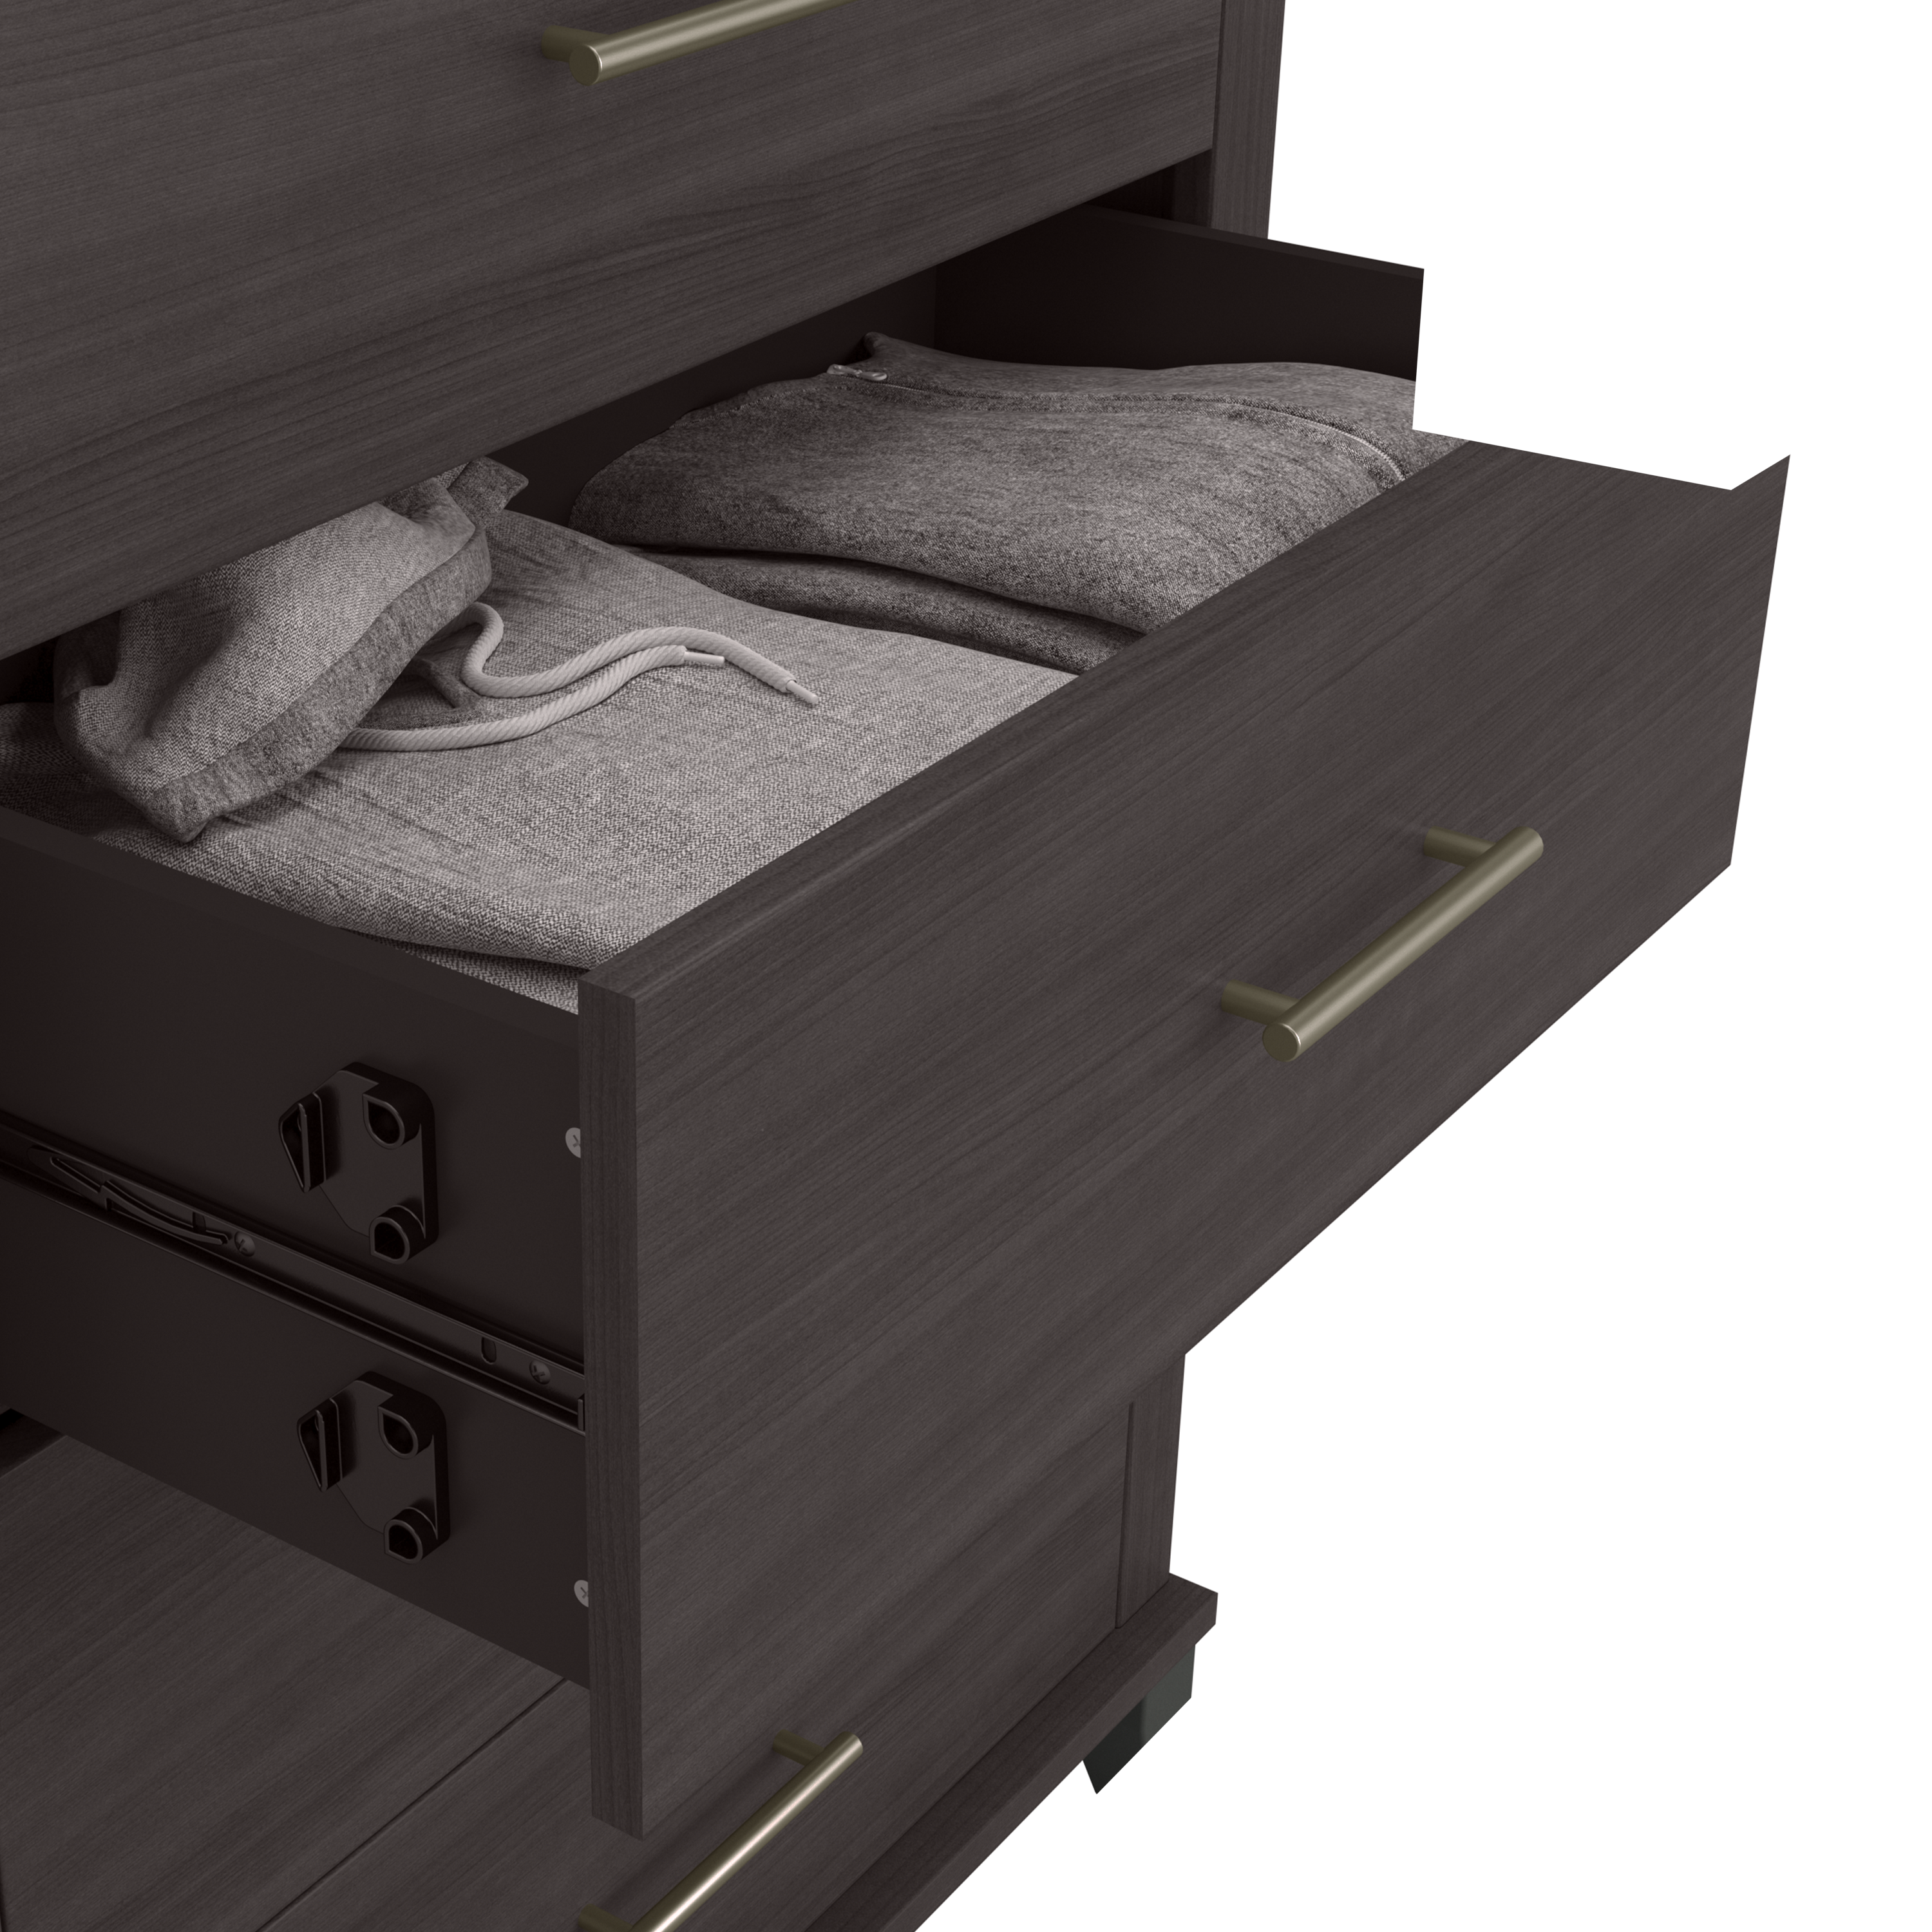 Shop Bush Furniture Somerset 6 Drawer Dresser and Nightstand Set 03 SET035SG #color_storm gray